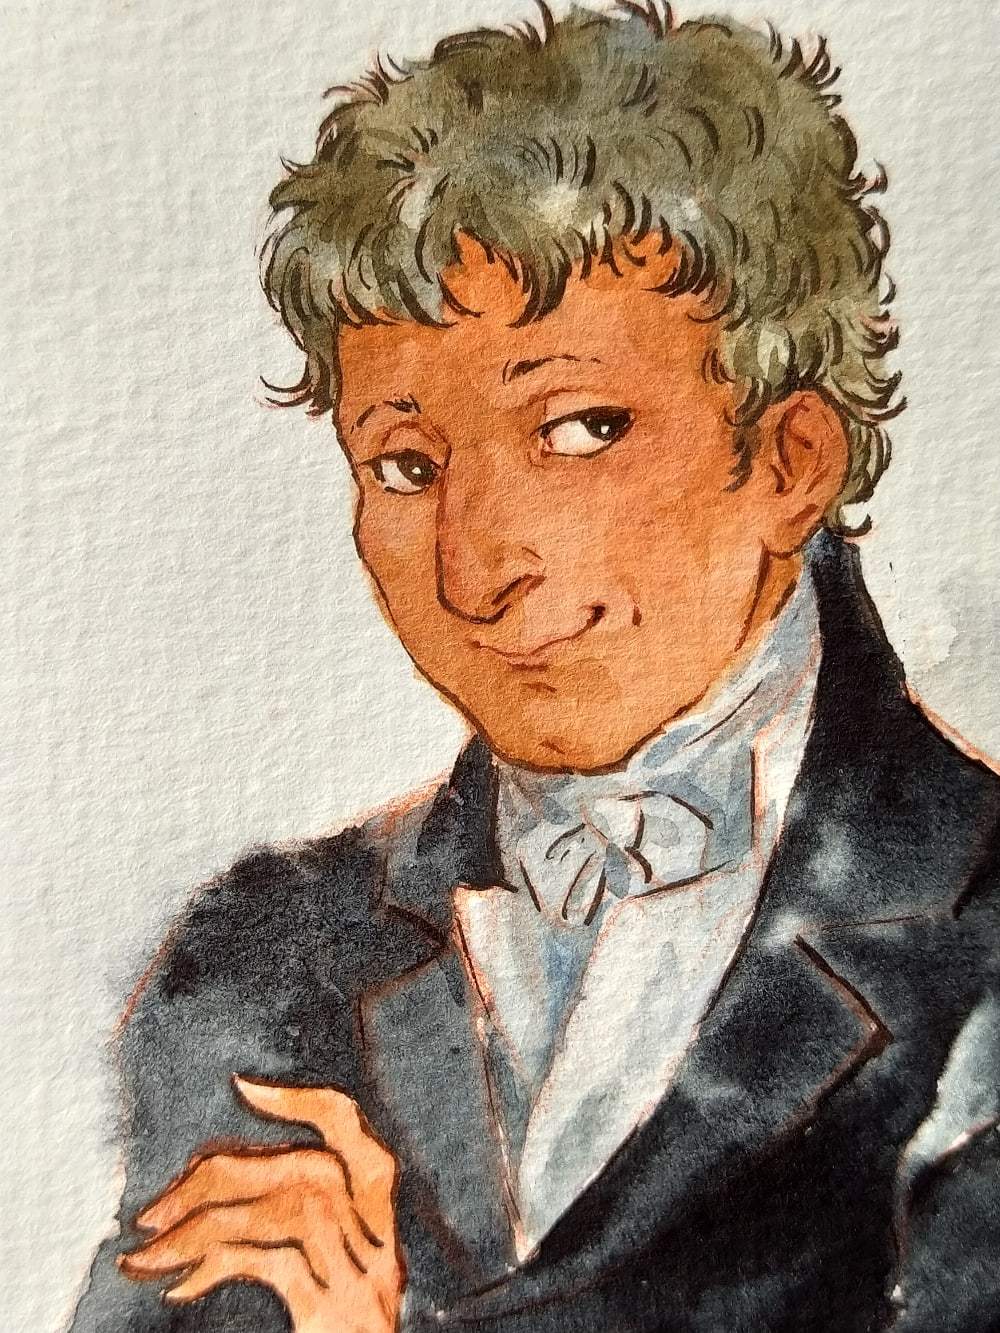 And Salieri again: portrait in watercolor - My, Salieri, Mozart and Salieri, Watercolor, Illustrations, Art, Portrait, Story, Longpost